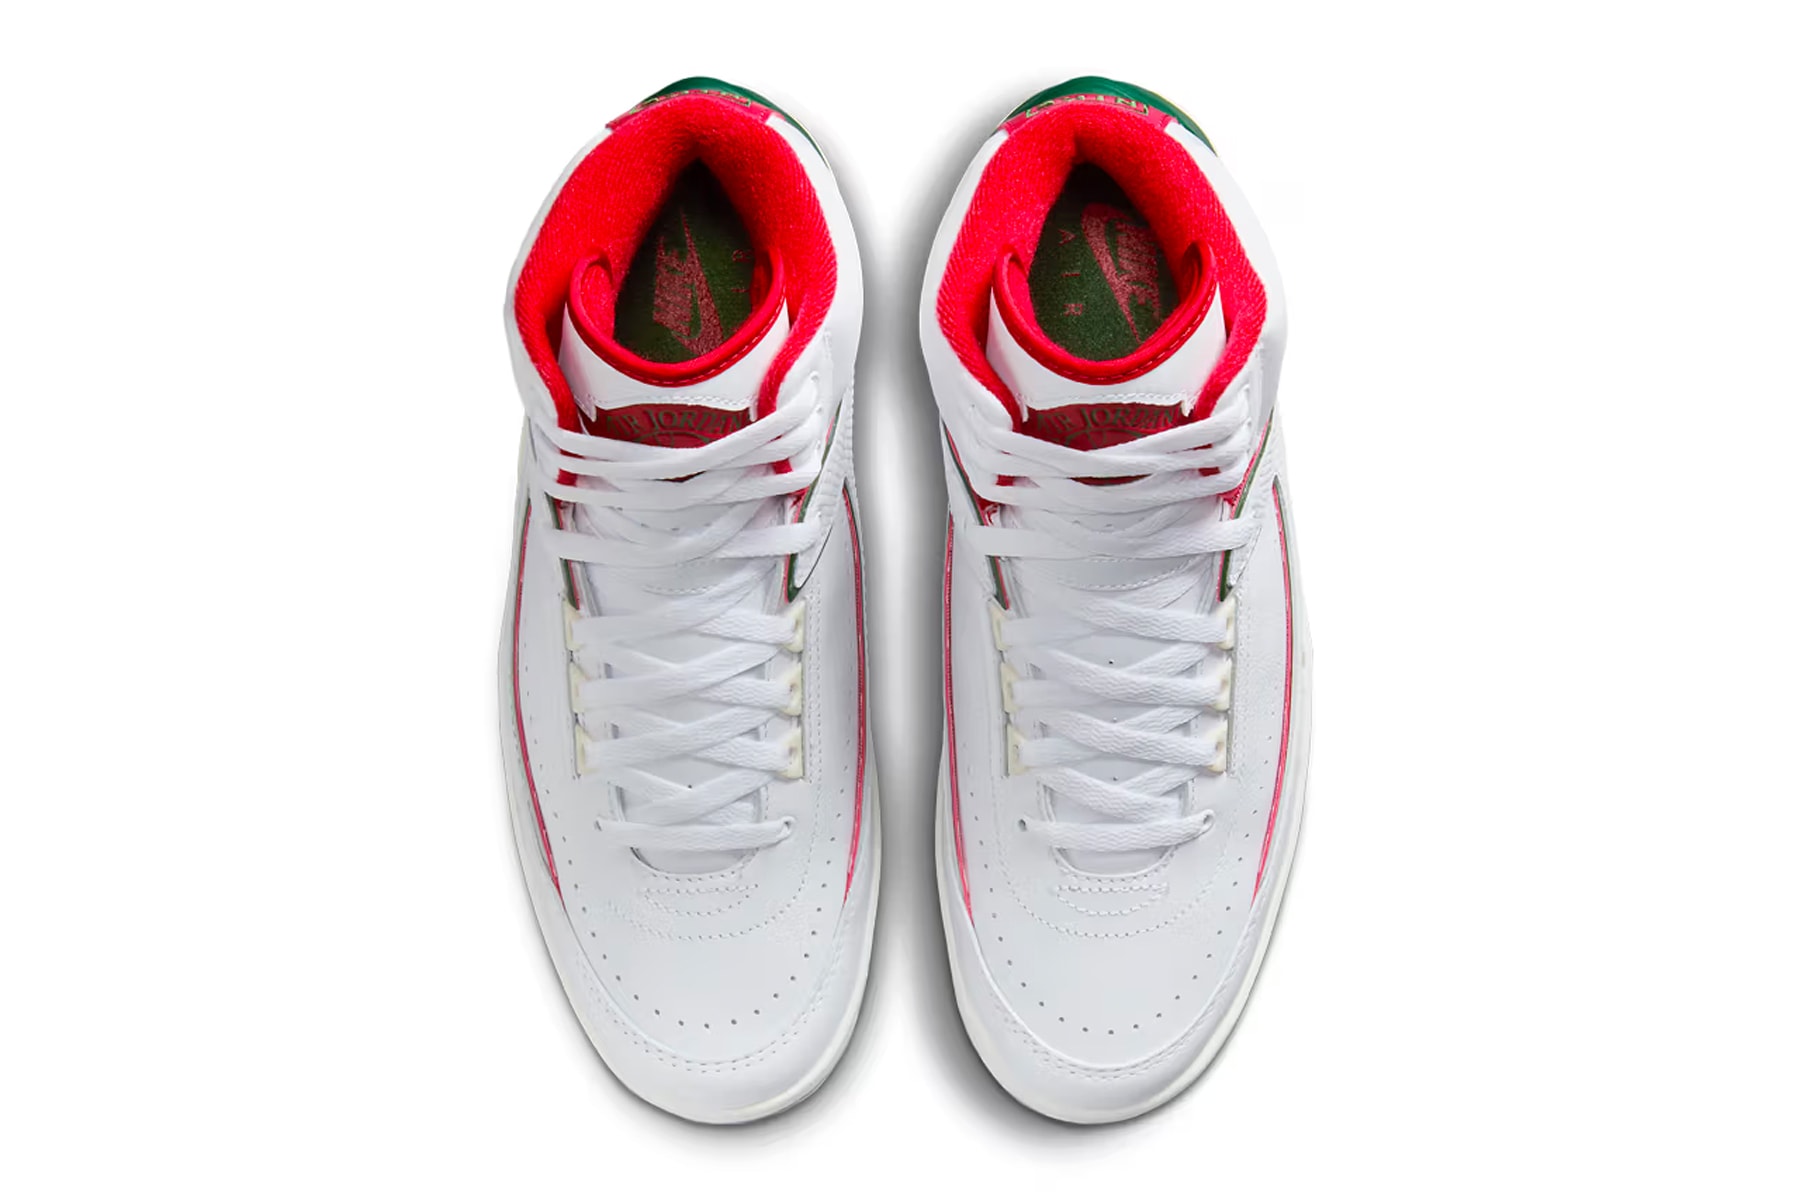 Air Jordan 2 最新配色「Origins」官方圖輯率先曝光